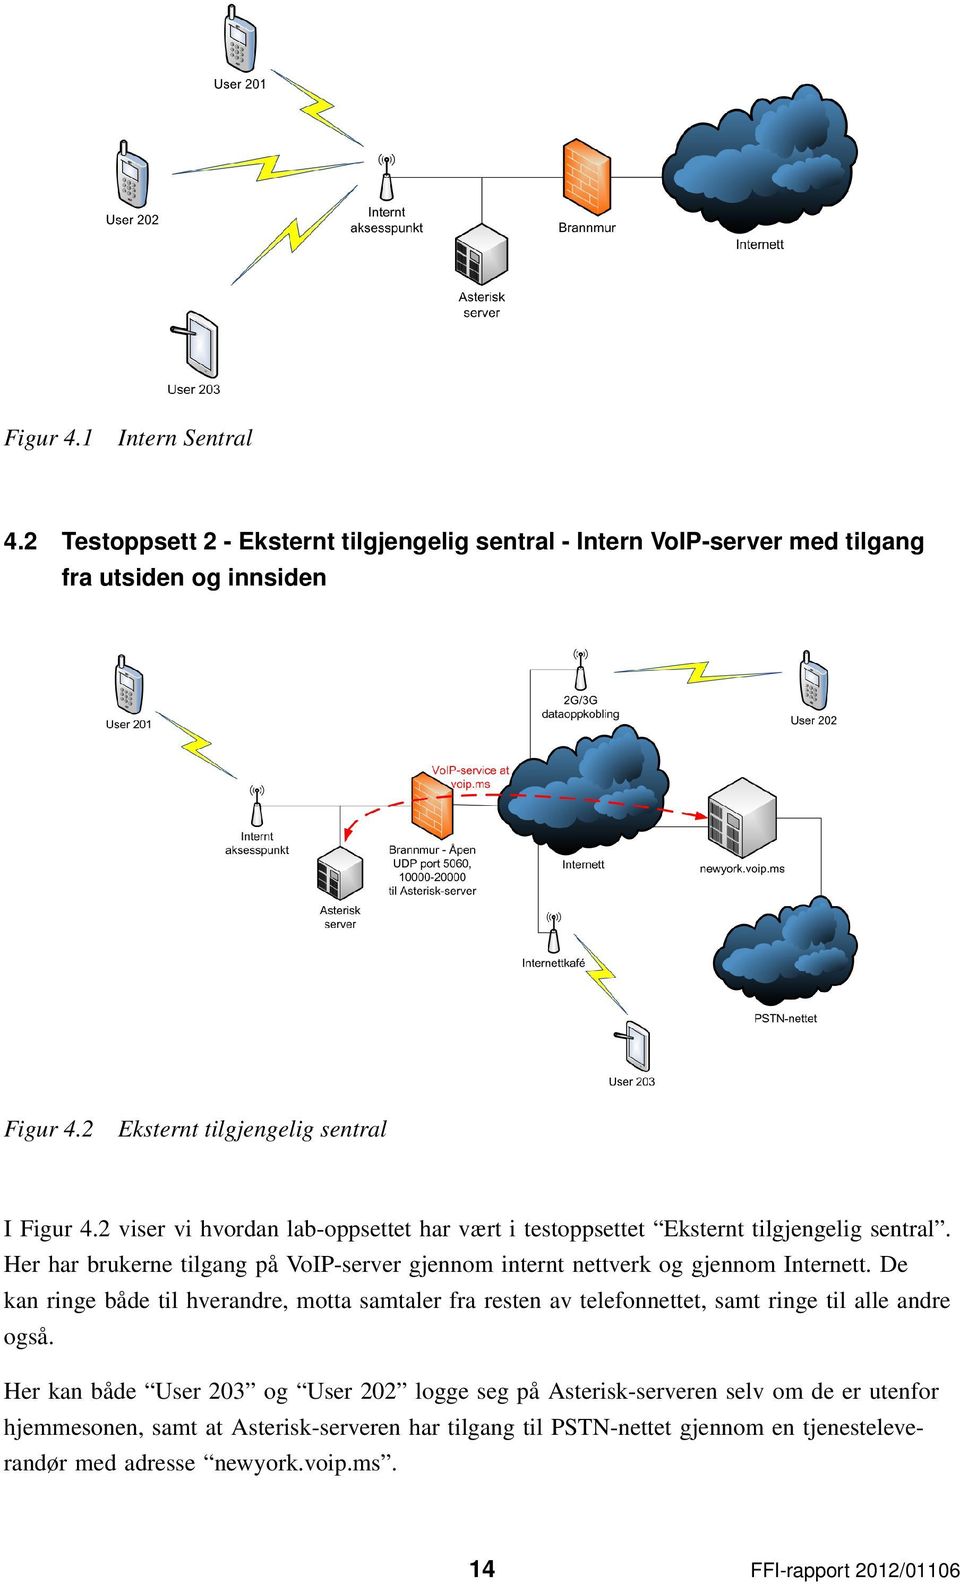 Her har brukerne tilgang på VoIP-server gjennom internt nettverk og gjennom Internett.